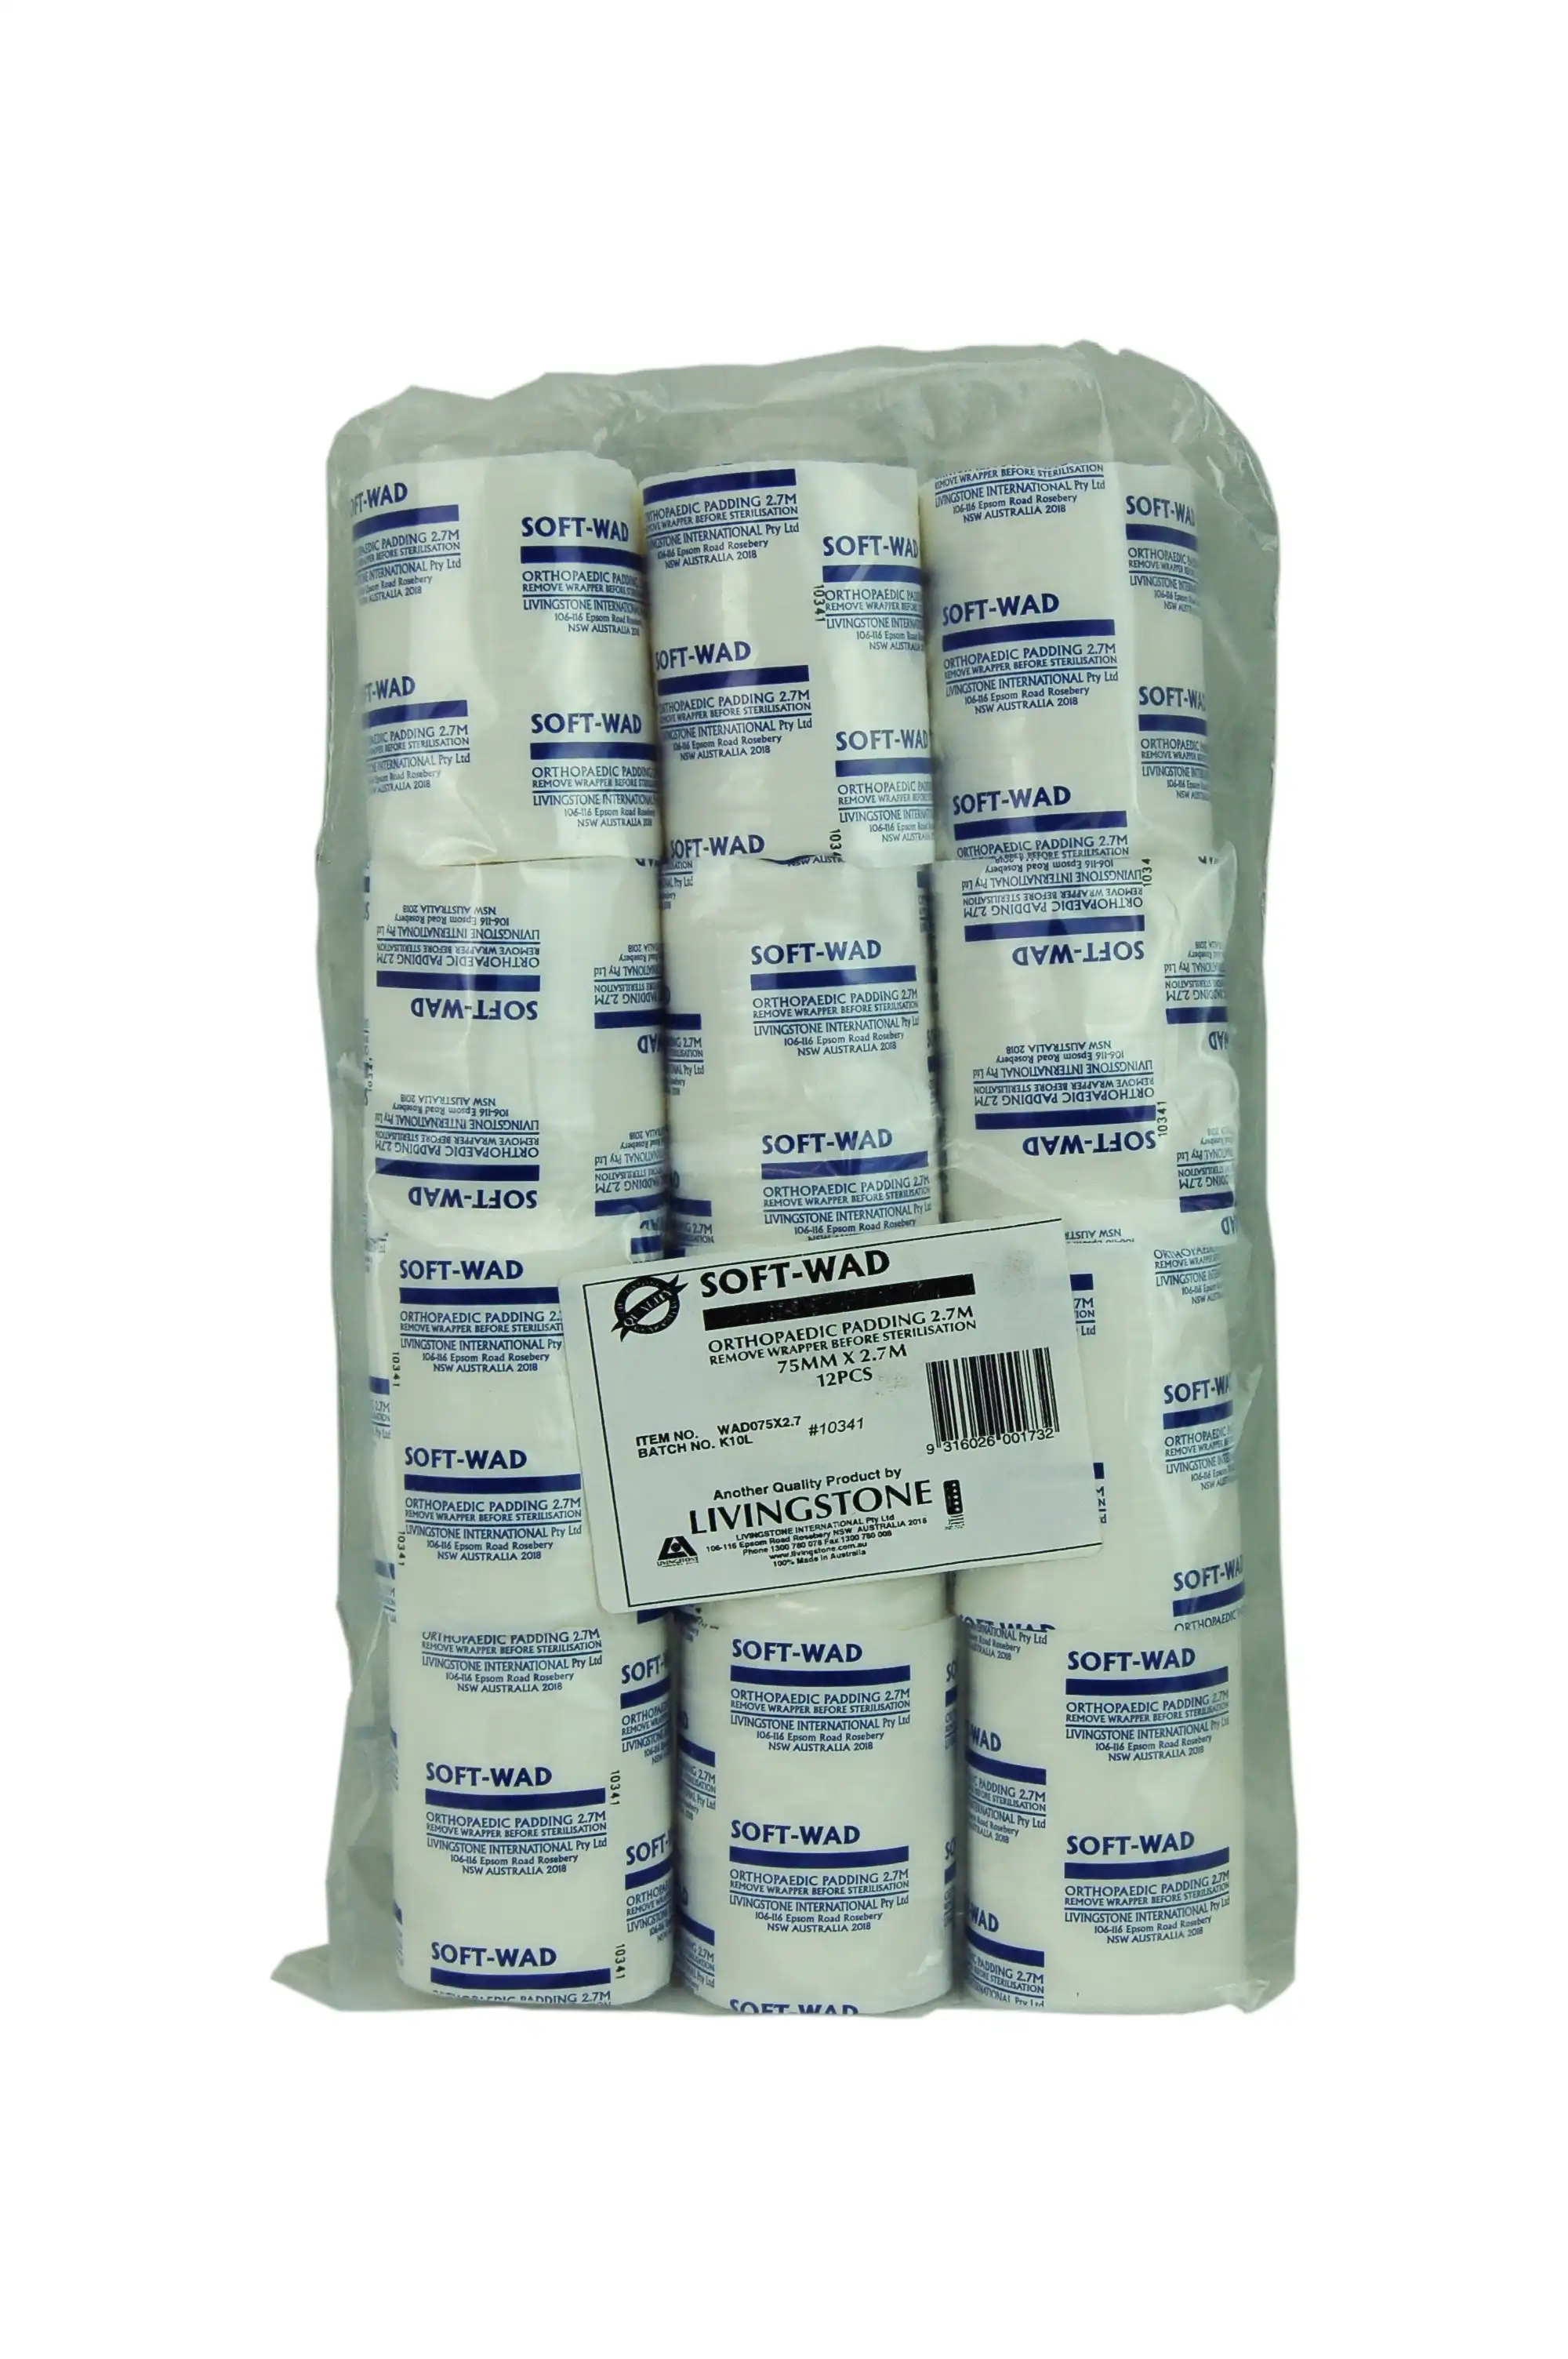 Livingstone Soft-Wad Orthopaedic Undercast Padding Bandage 7.5cm x 2.7m Natural White 12 Pack